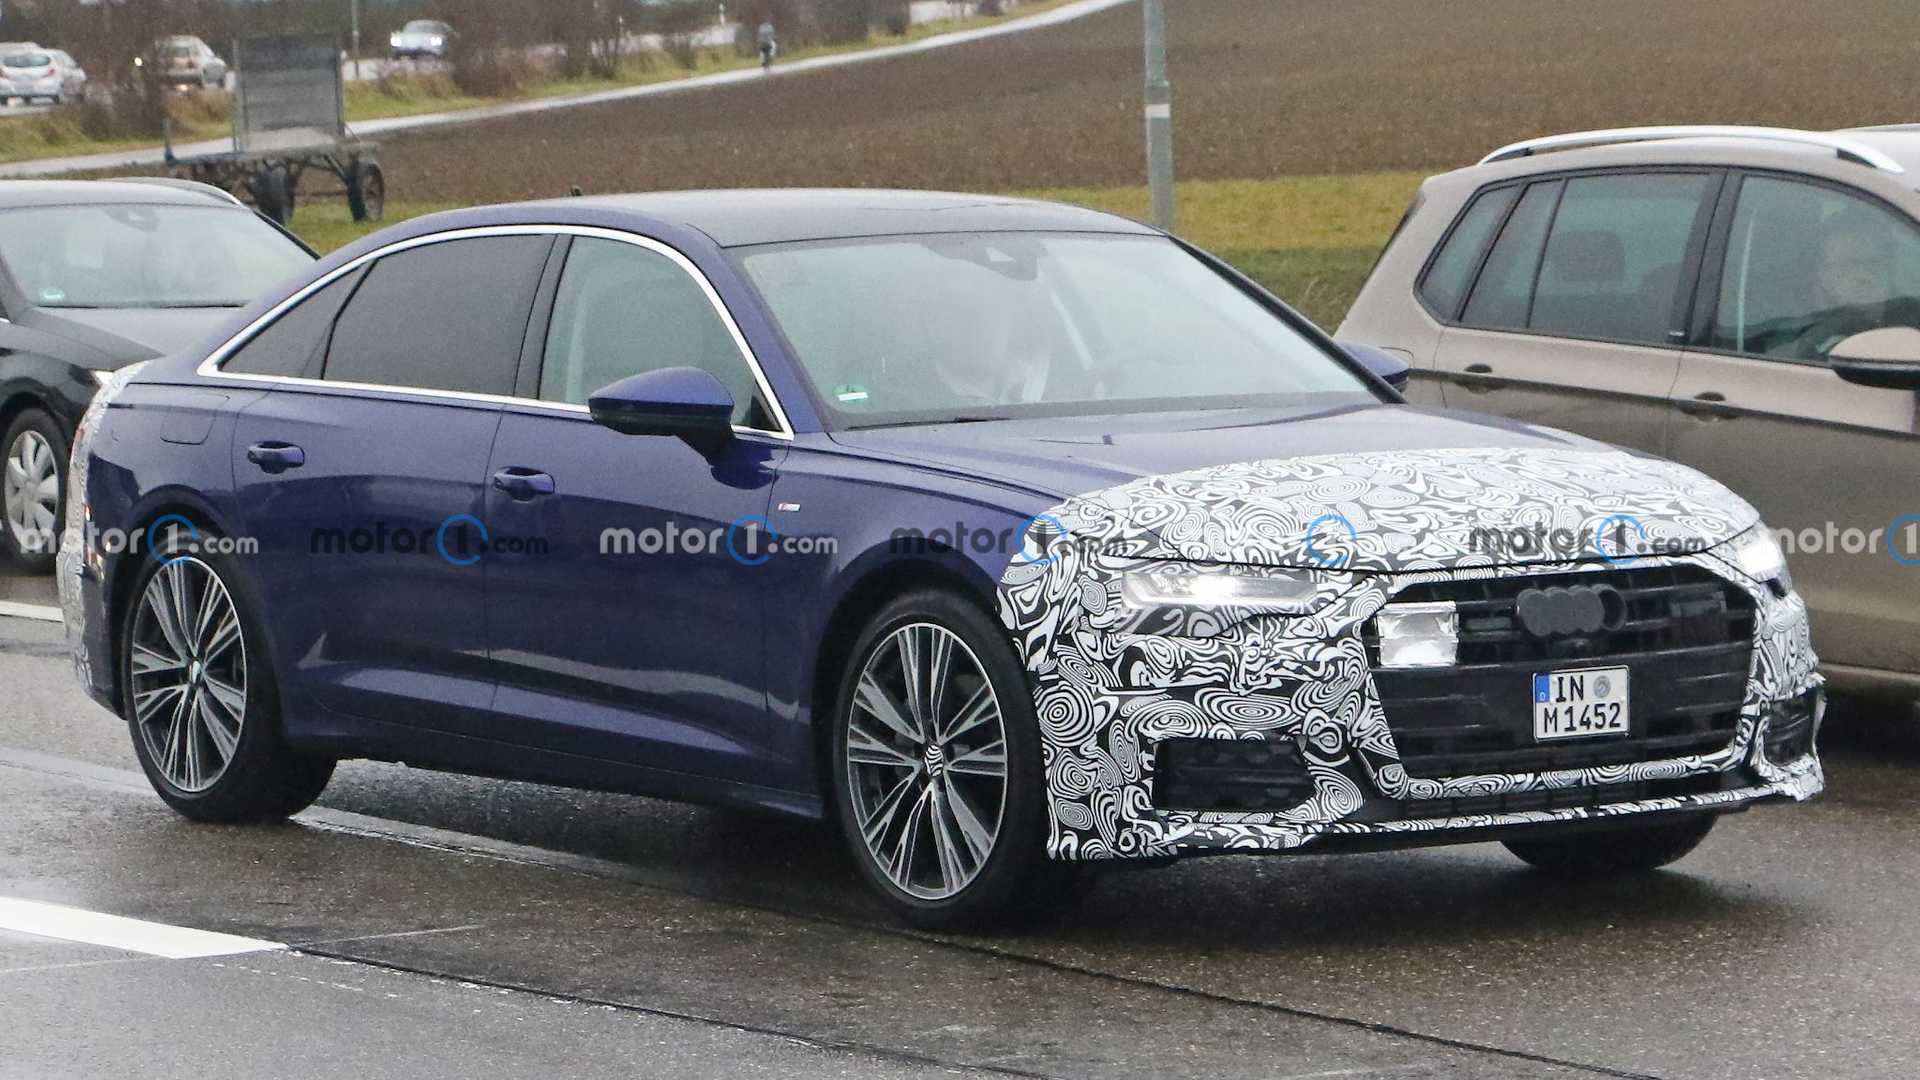 Audi A6 Spy Shots Show Sedan Is Next In ...